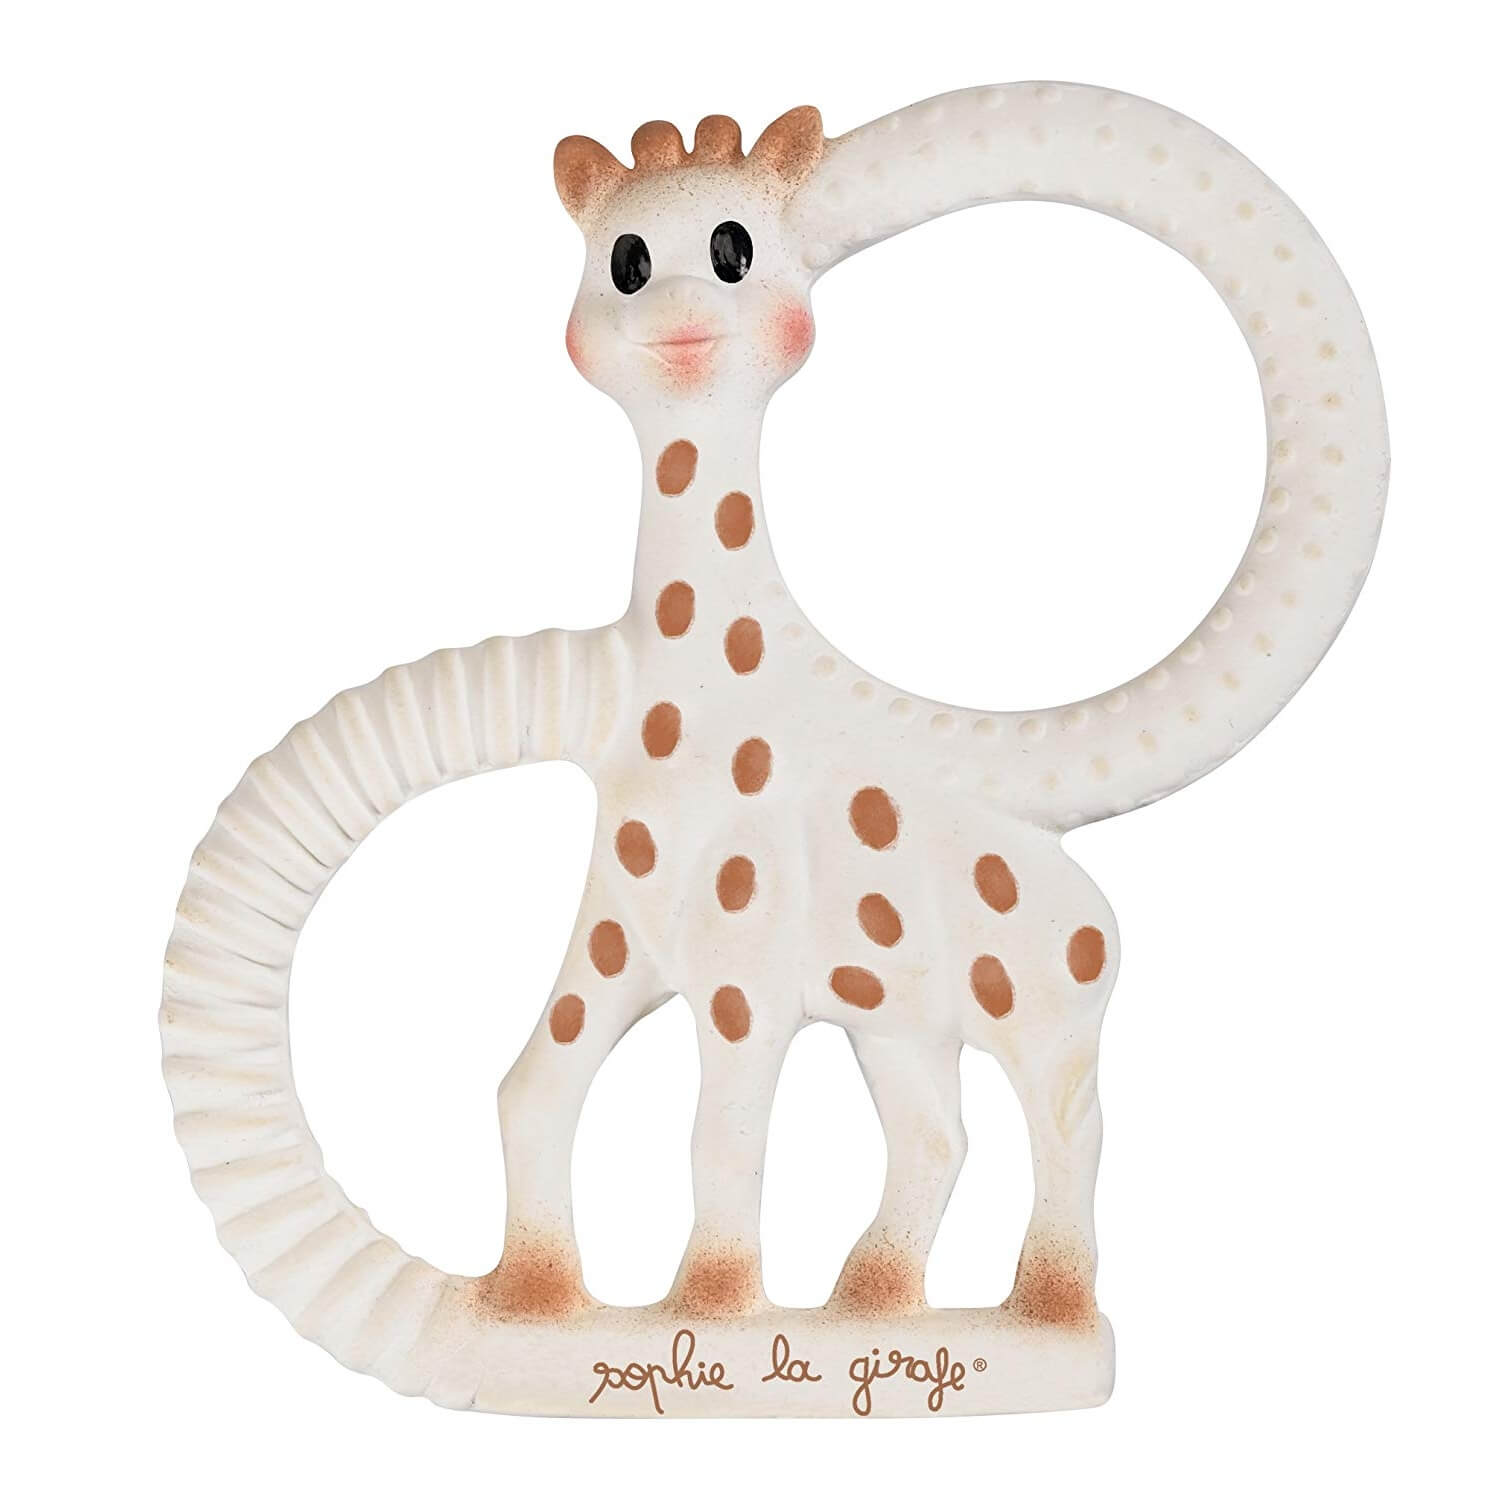 Bateau de bain Sophie la girafe dans une boîte cadeau blanche